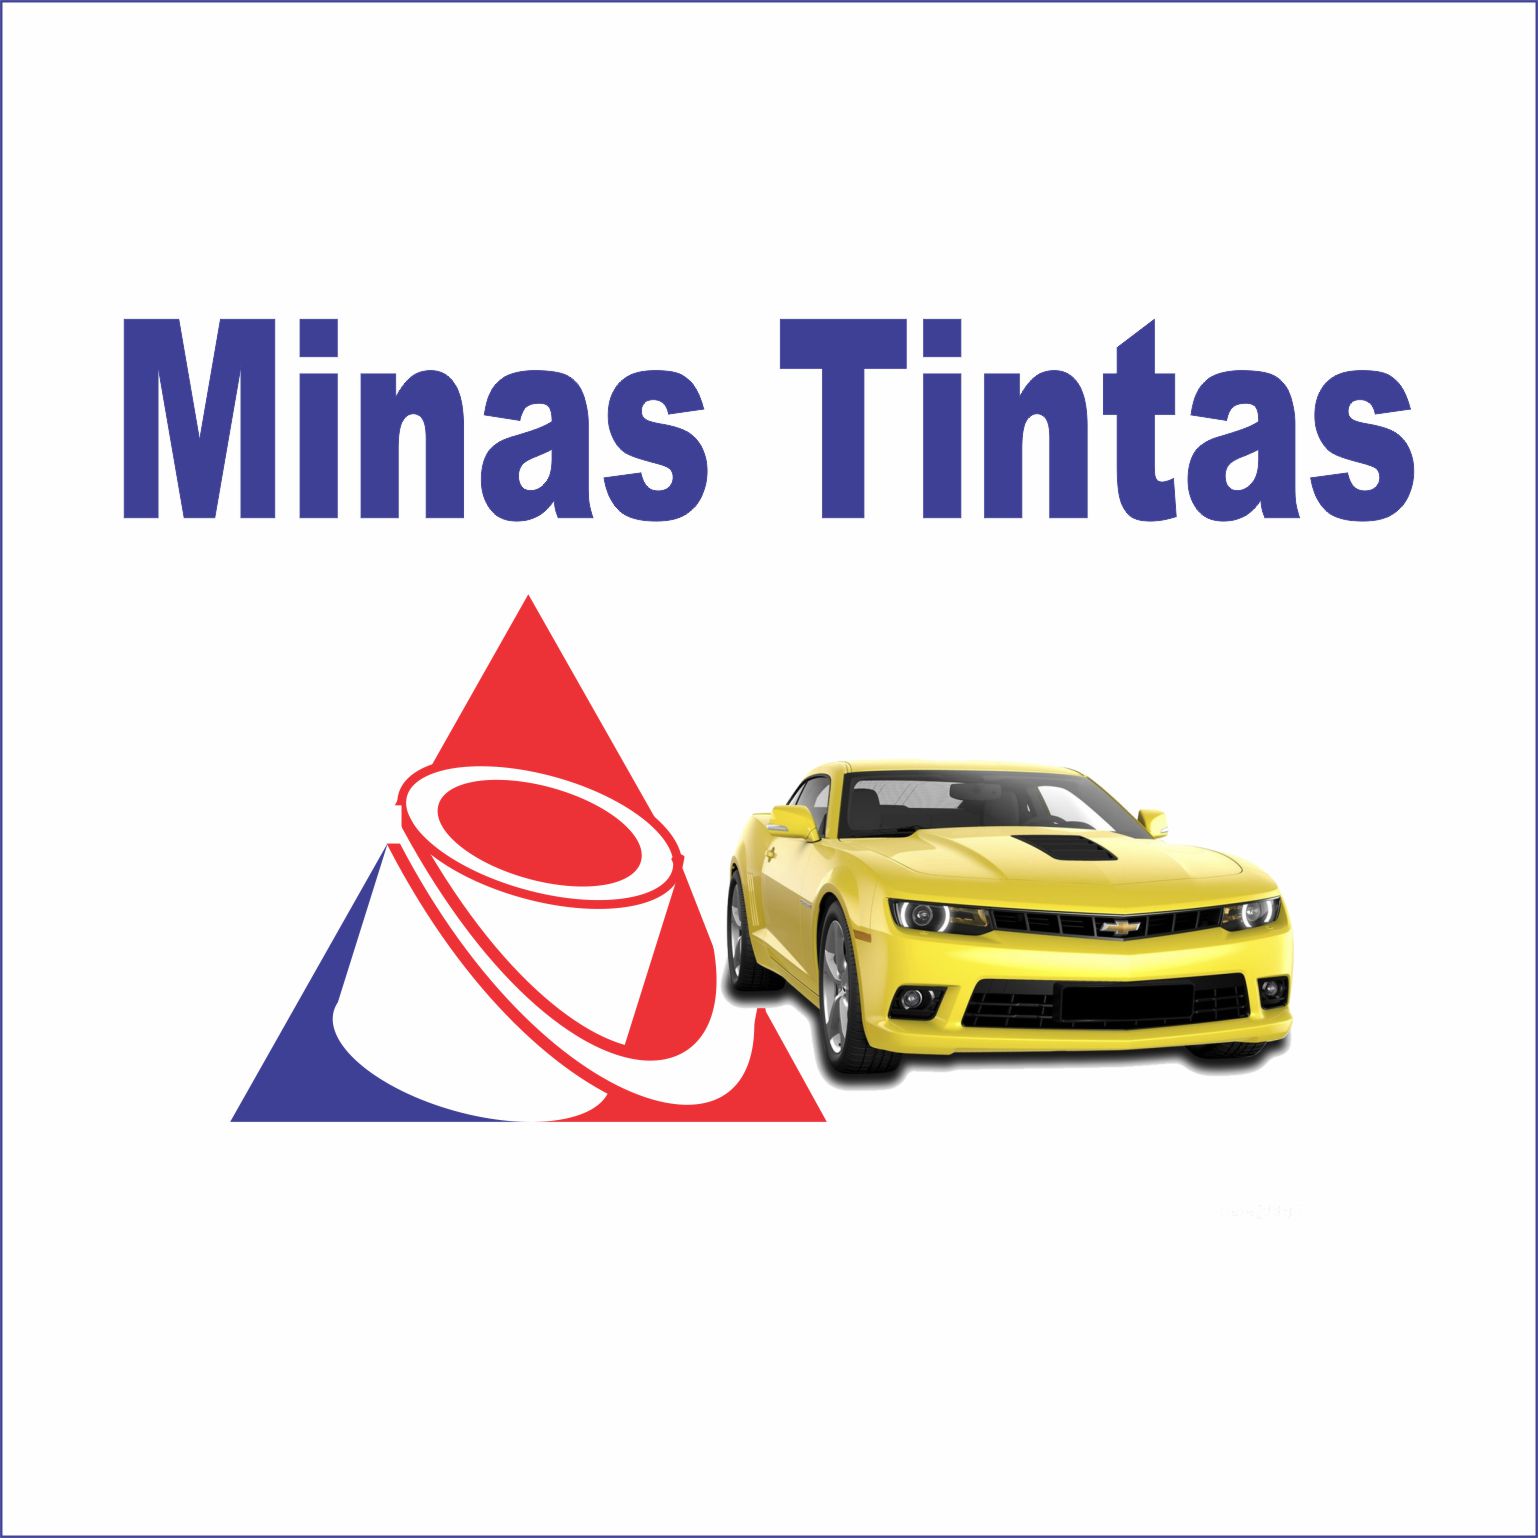 Minas Tintas